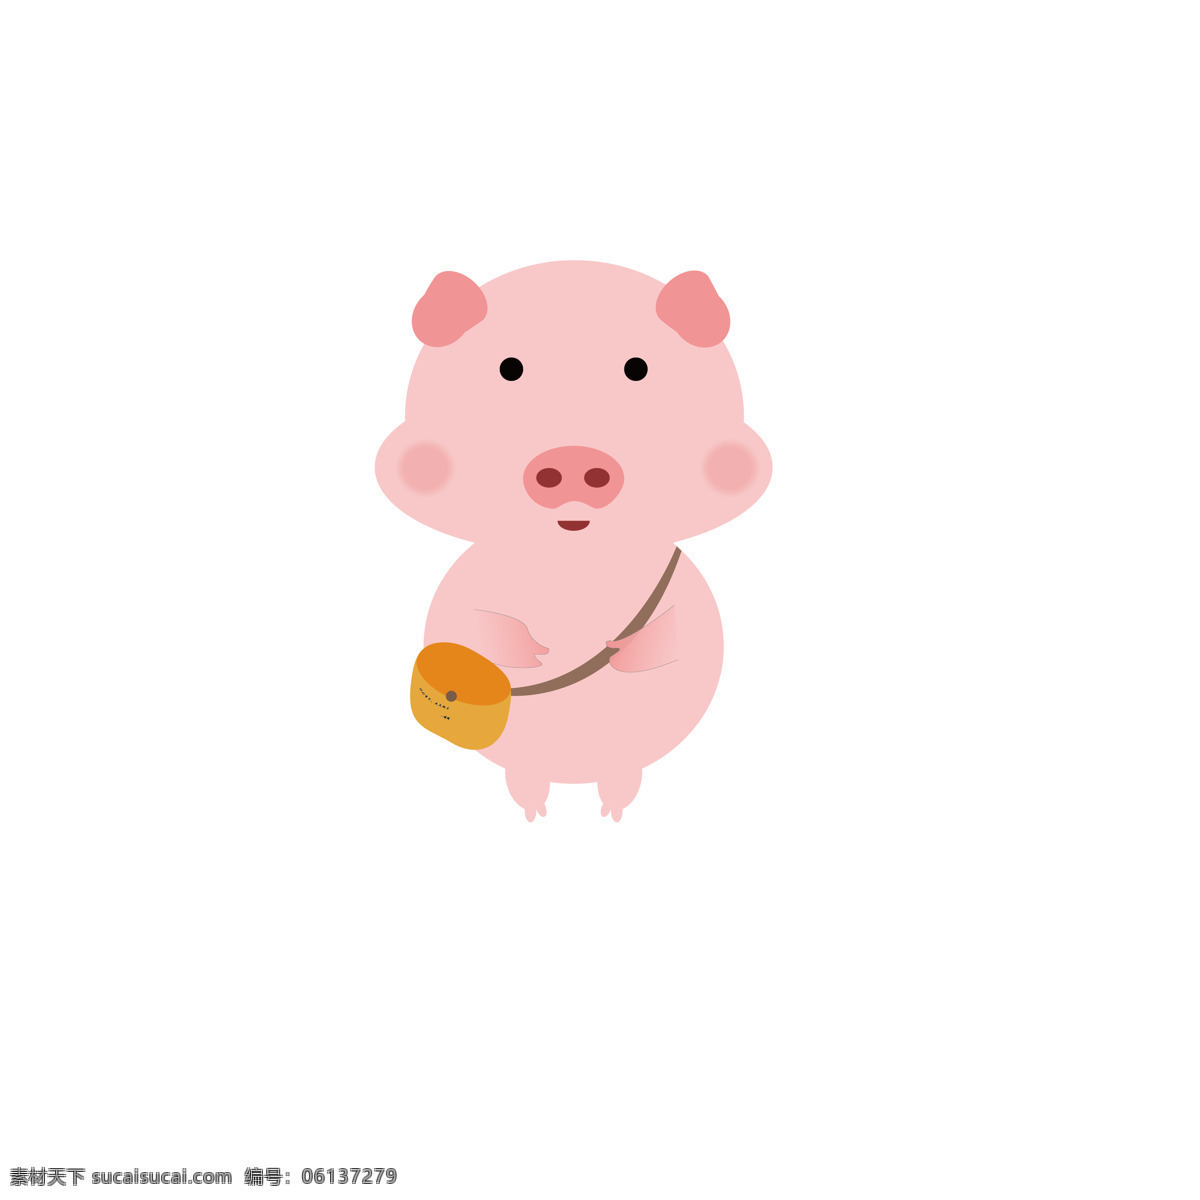 粉红猪 猪 背包猪 卡通猪 小猪 zhu 生物世界 家禽家畜